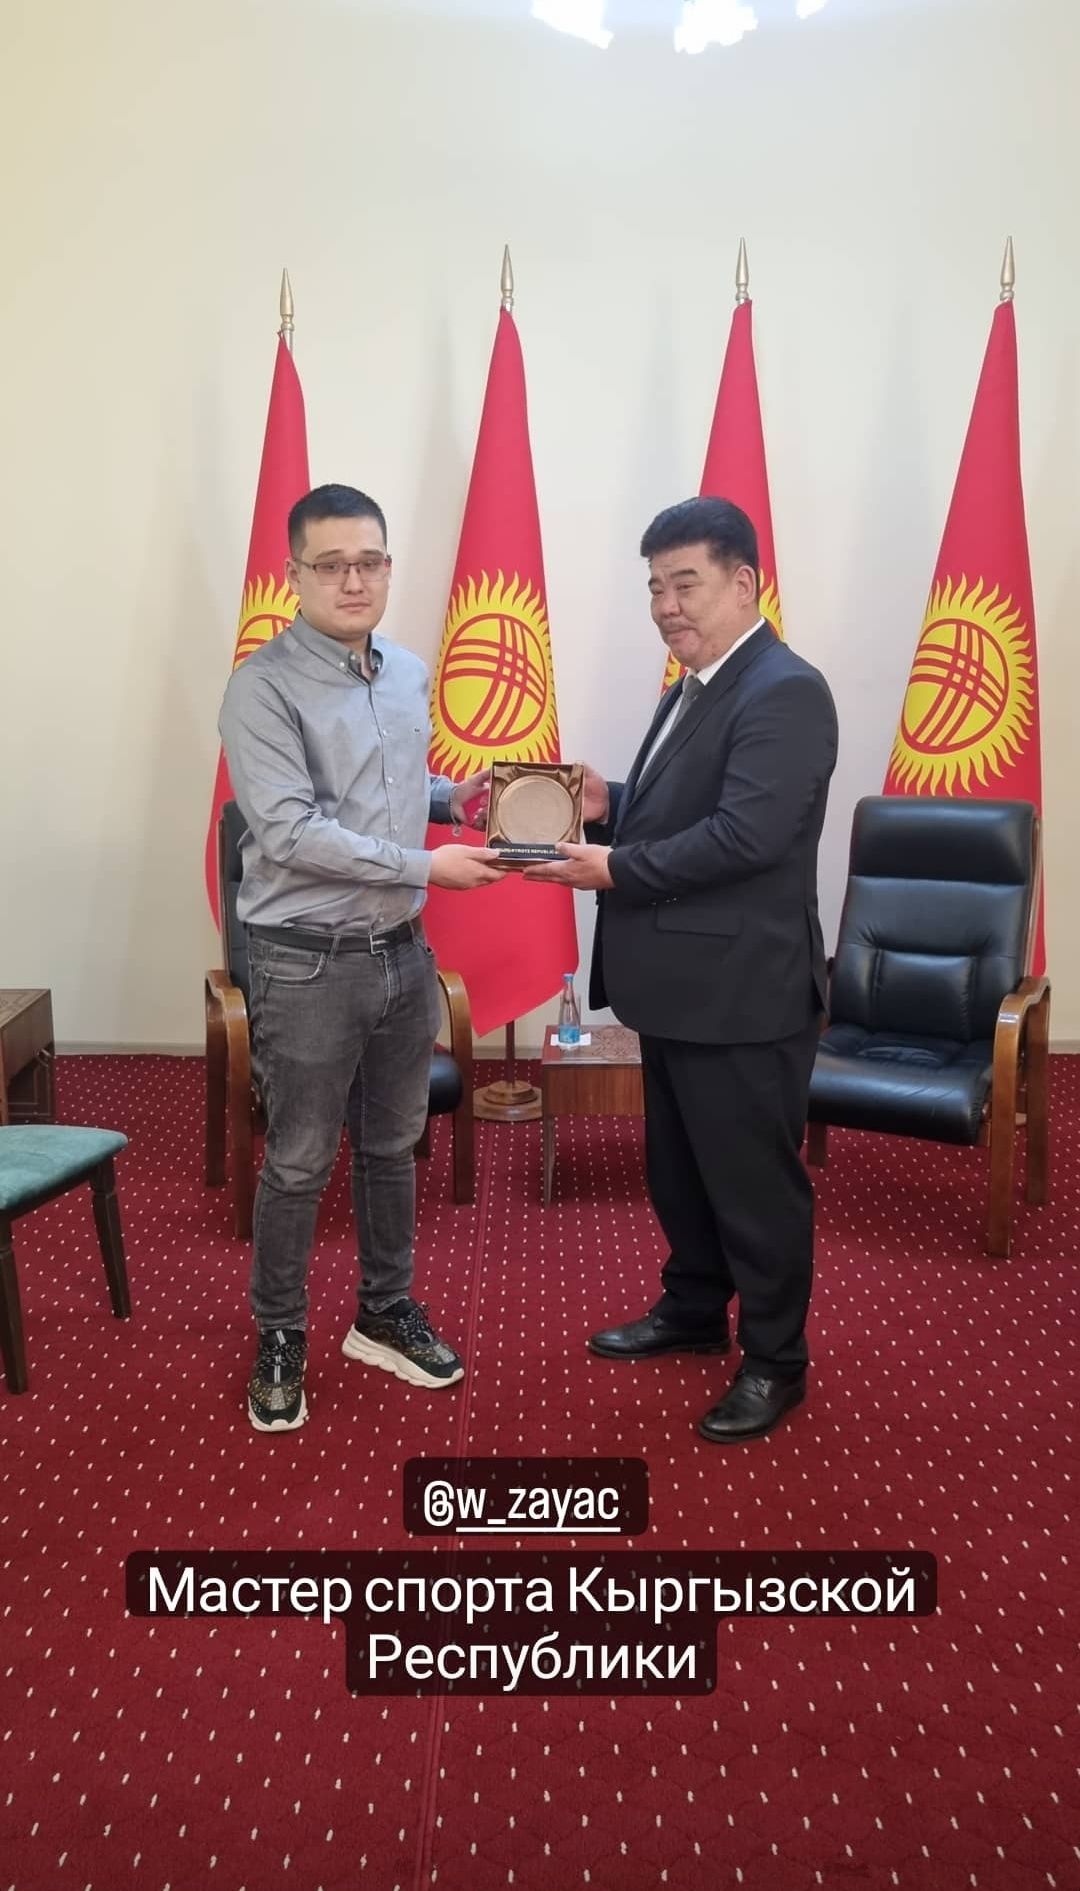 Источник: социальные сети Федерации Компьютерного Спорта Кыргызстана